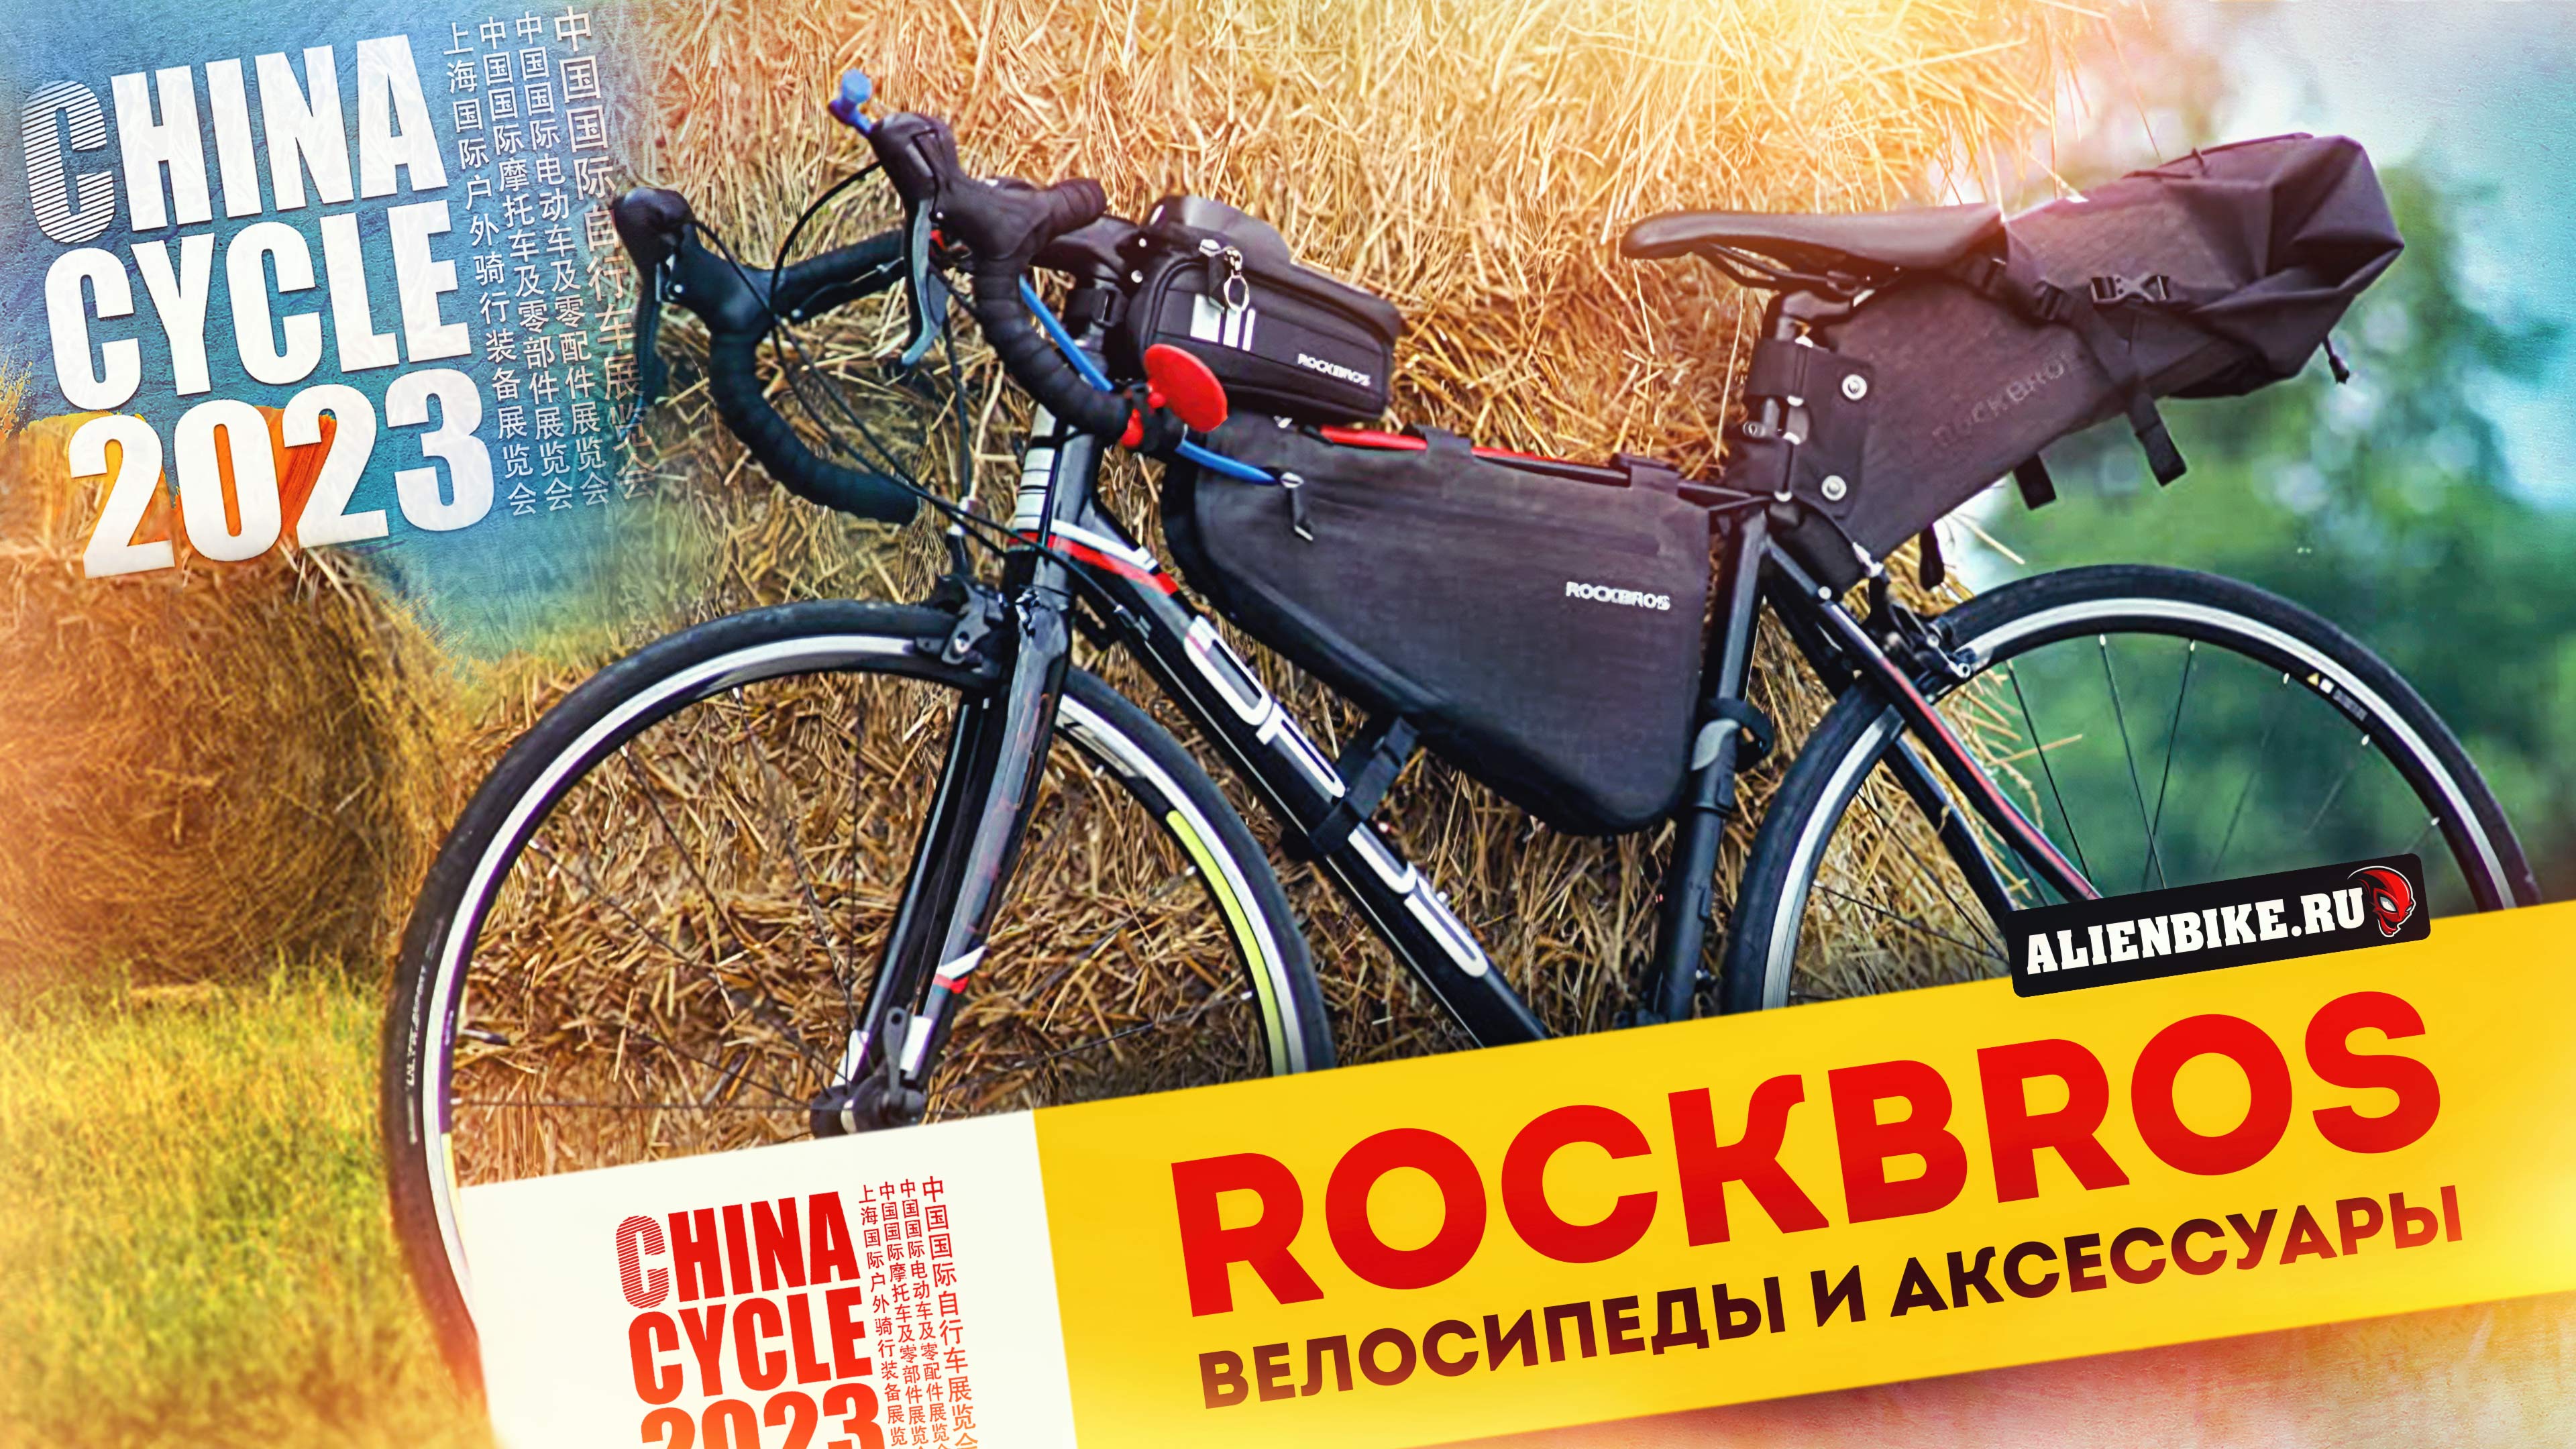 Велосипеды и аксессуары RockBros // Всё от сумок и фонариков до велосипедов | China Cycle 2023